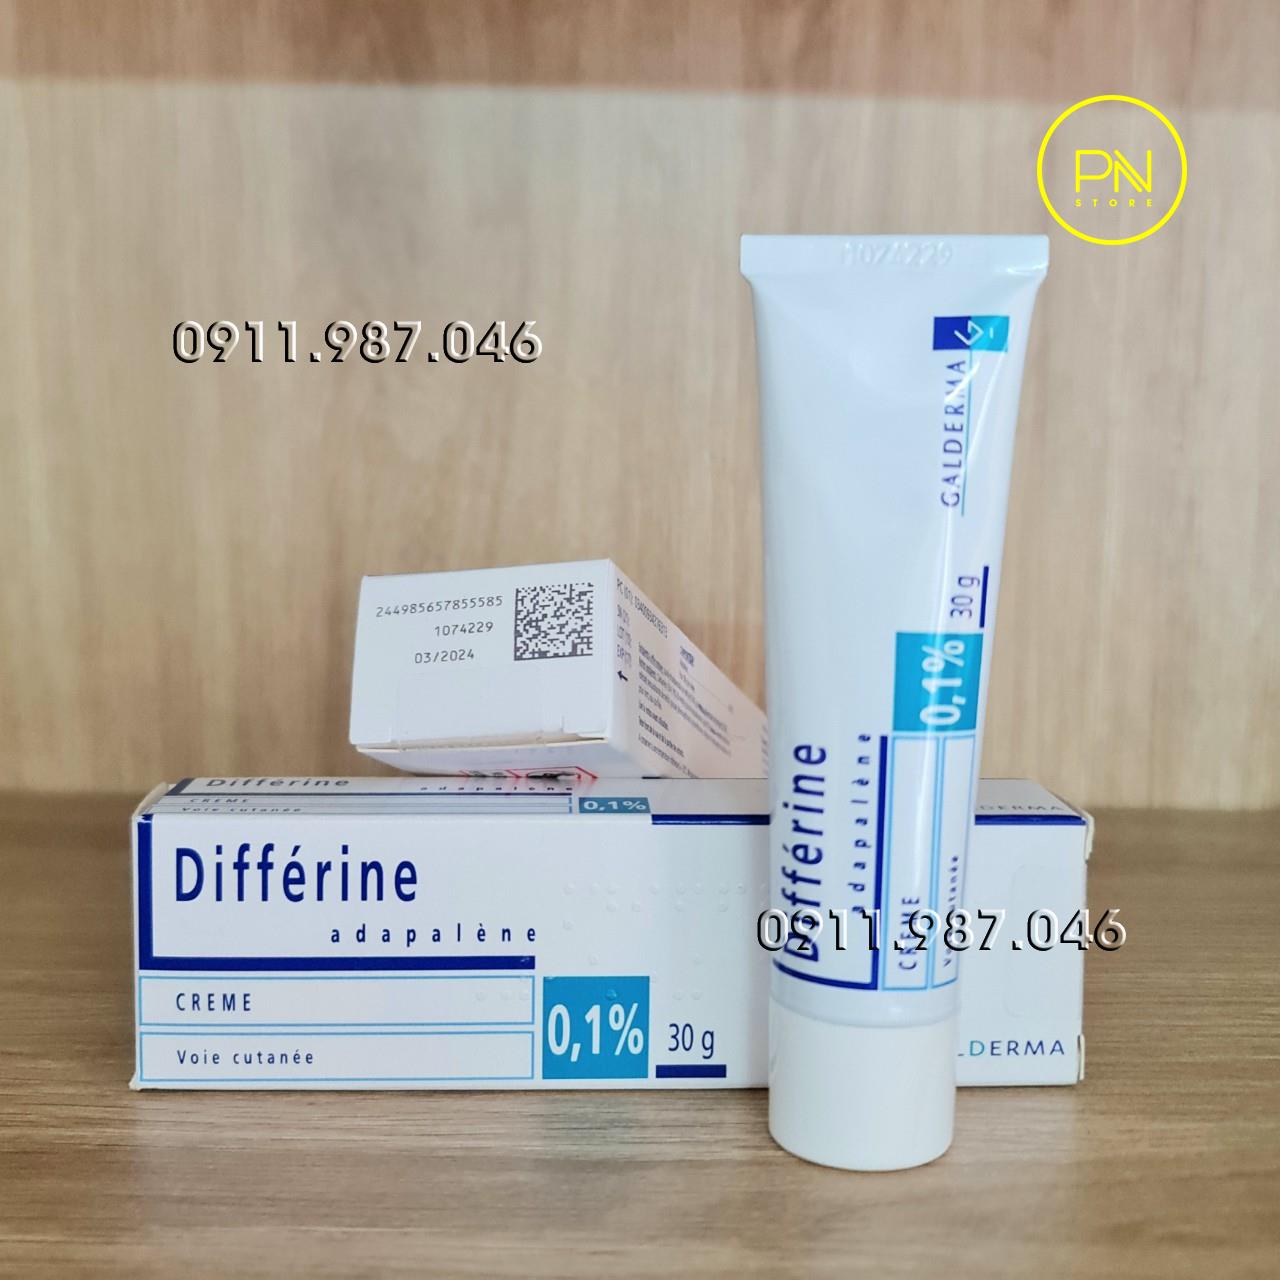 Trị mụn Differin Cream Adapalene 0.1% 30g chính hãng (Pháp) - PN99861